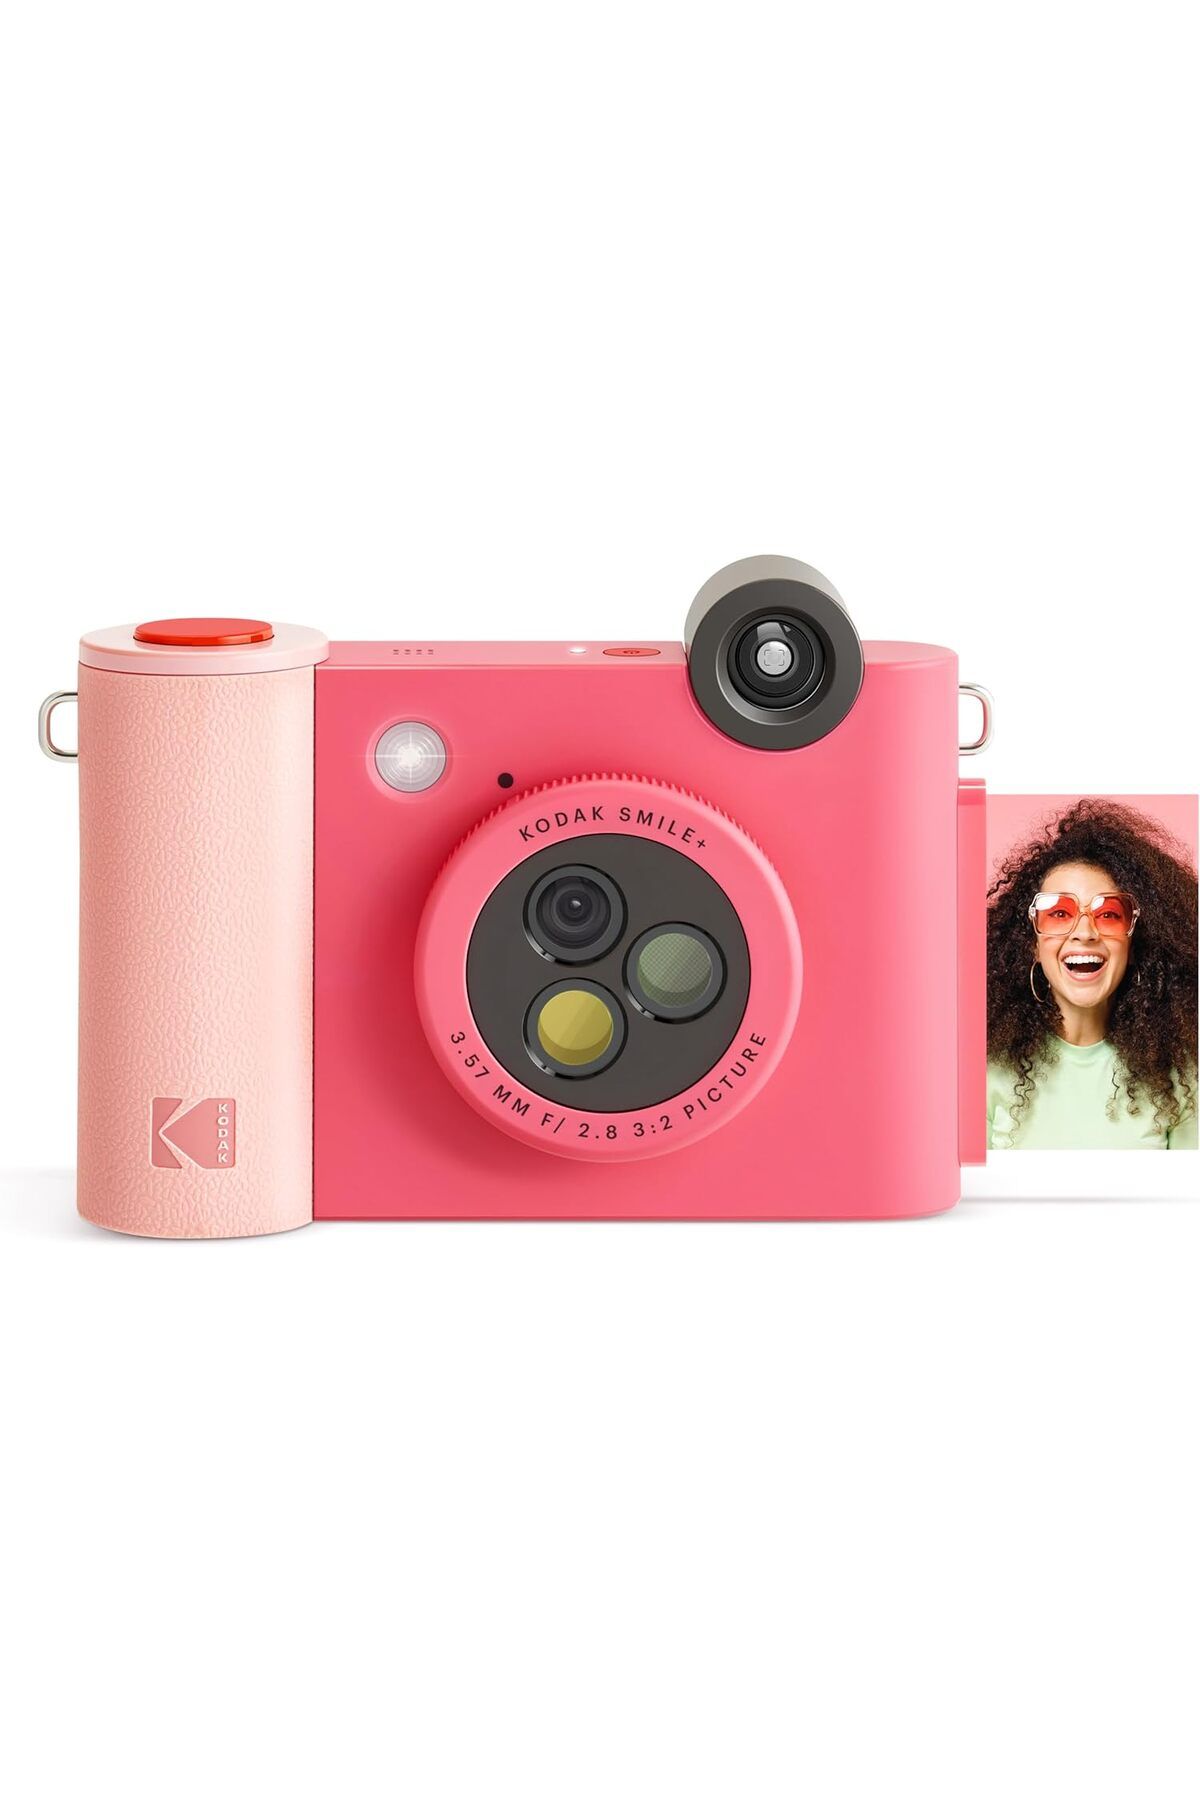 Kodak Smile+ Kablosuz Dijital Fotoğraf Makinesi: Efekt Değiştiren Objektif, Kendinden Yapışkanlı